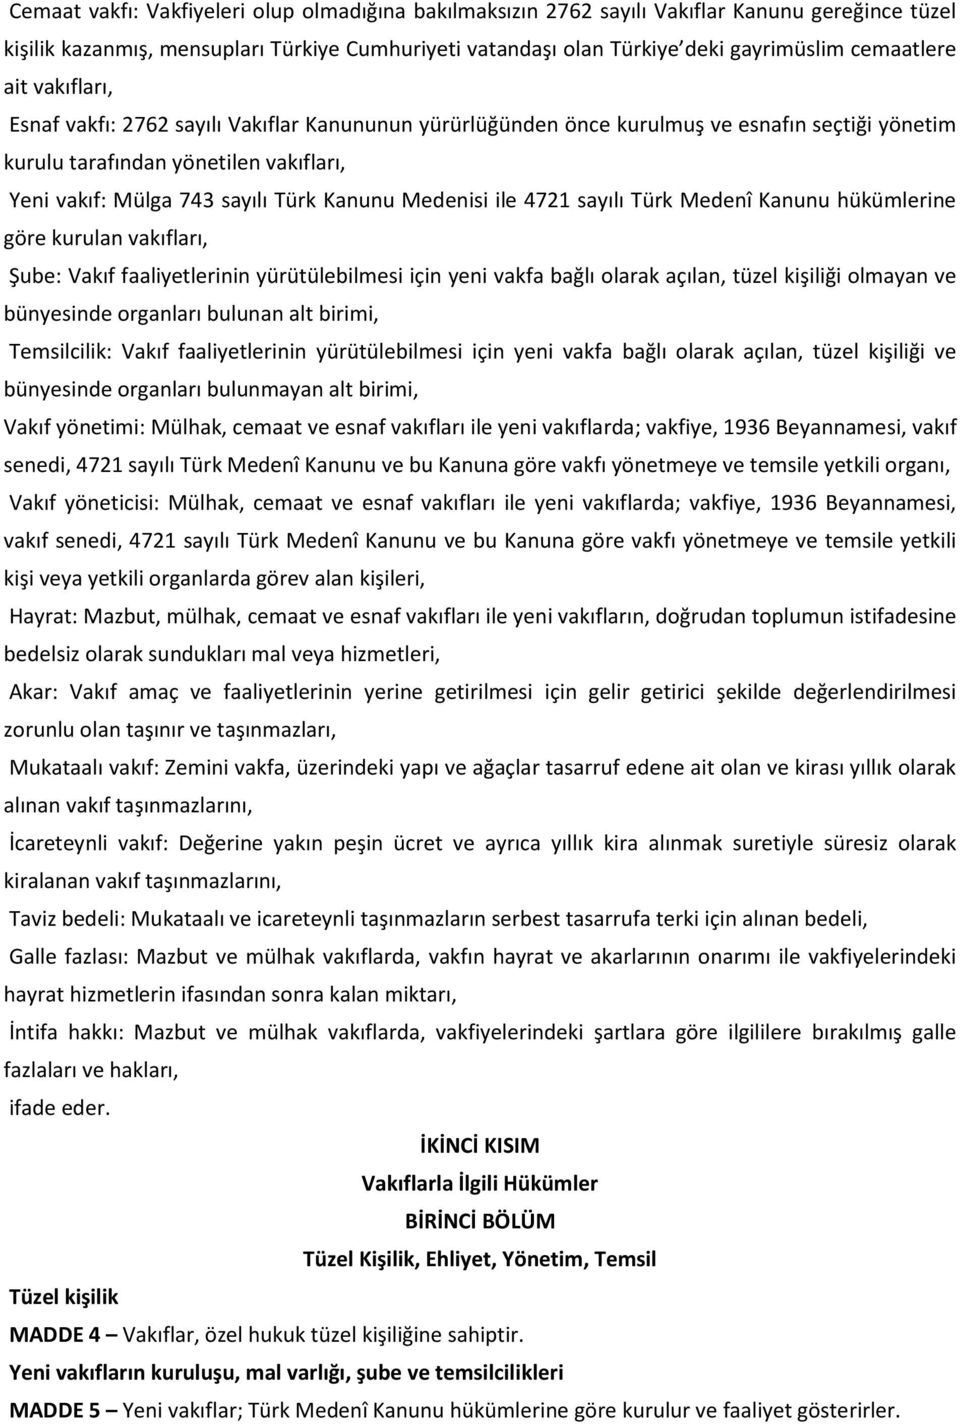 Medenisi ile 4721 sayılı Türk Medenî Kanunu hükümlerine göre kurulan vakıfları, Şube: Vakıf faaliyetlerinin yürütülebilmesi için yeni vakfa bağlı olarak açılan, tüzel kişiliği olmayan ve bünyesinde